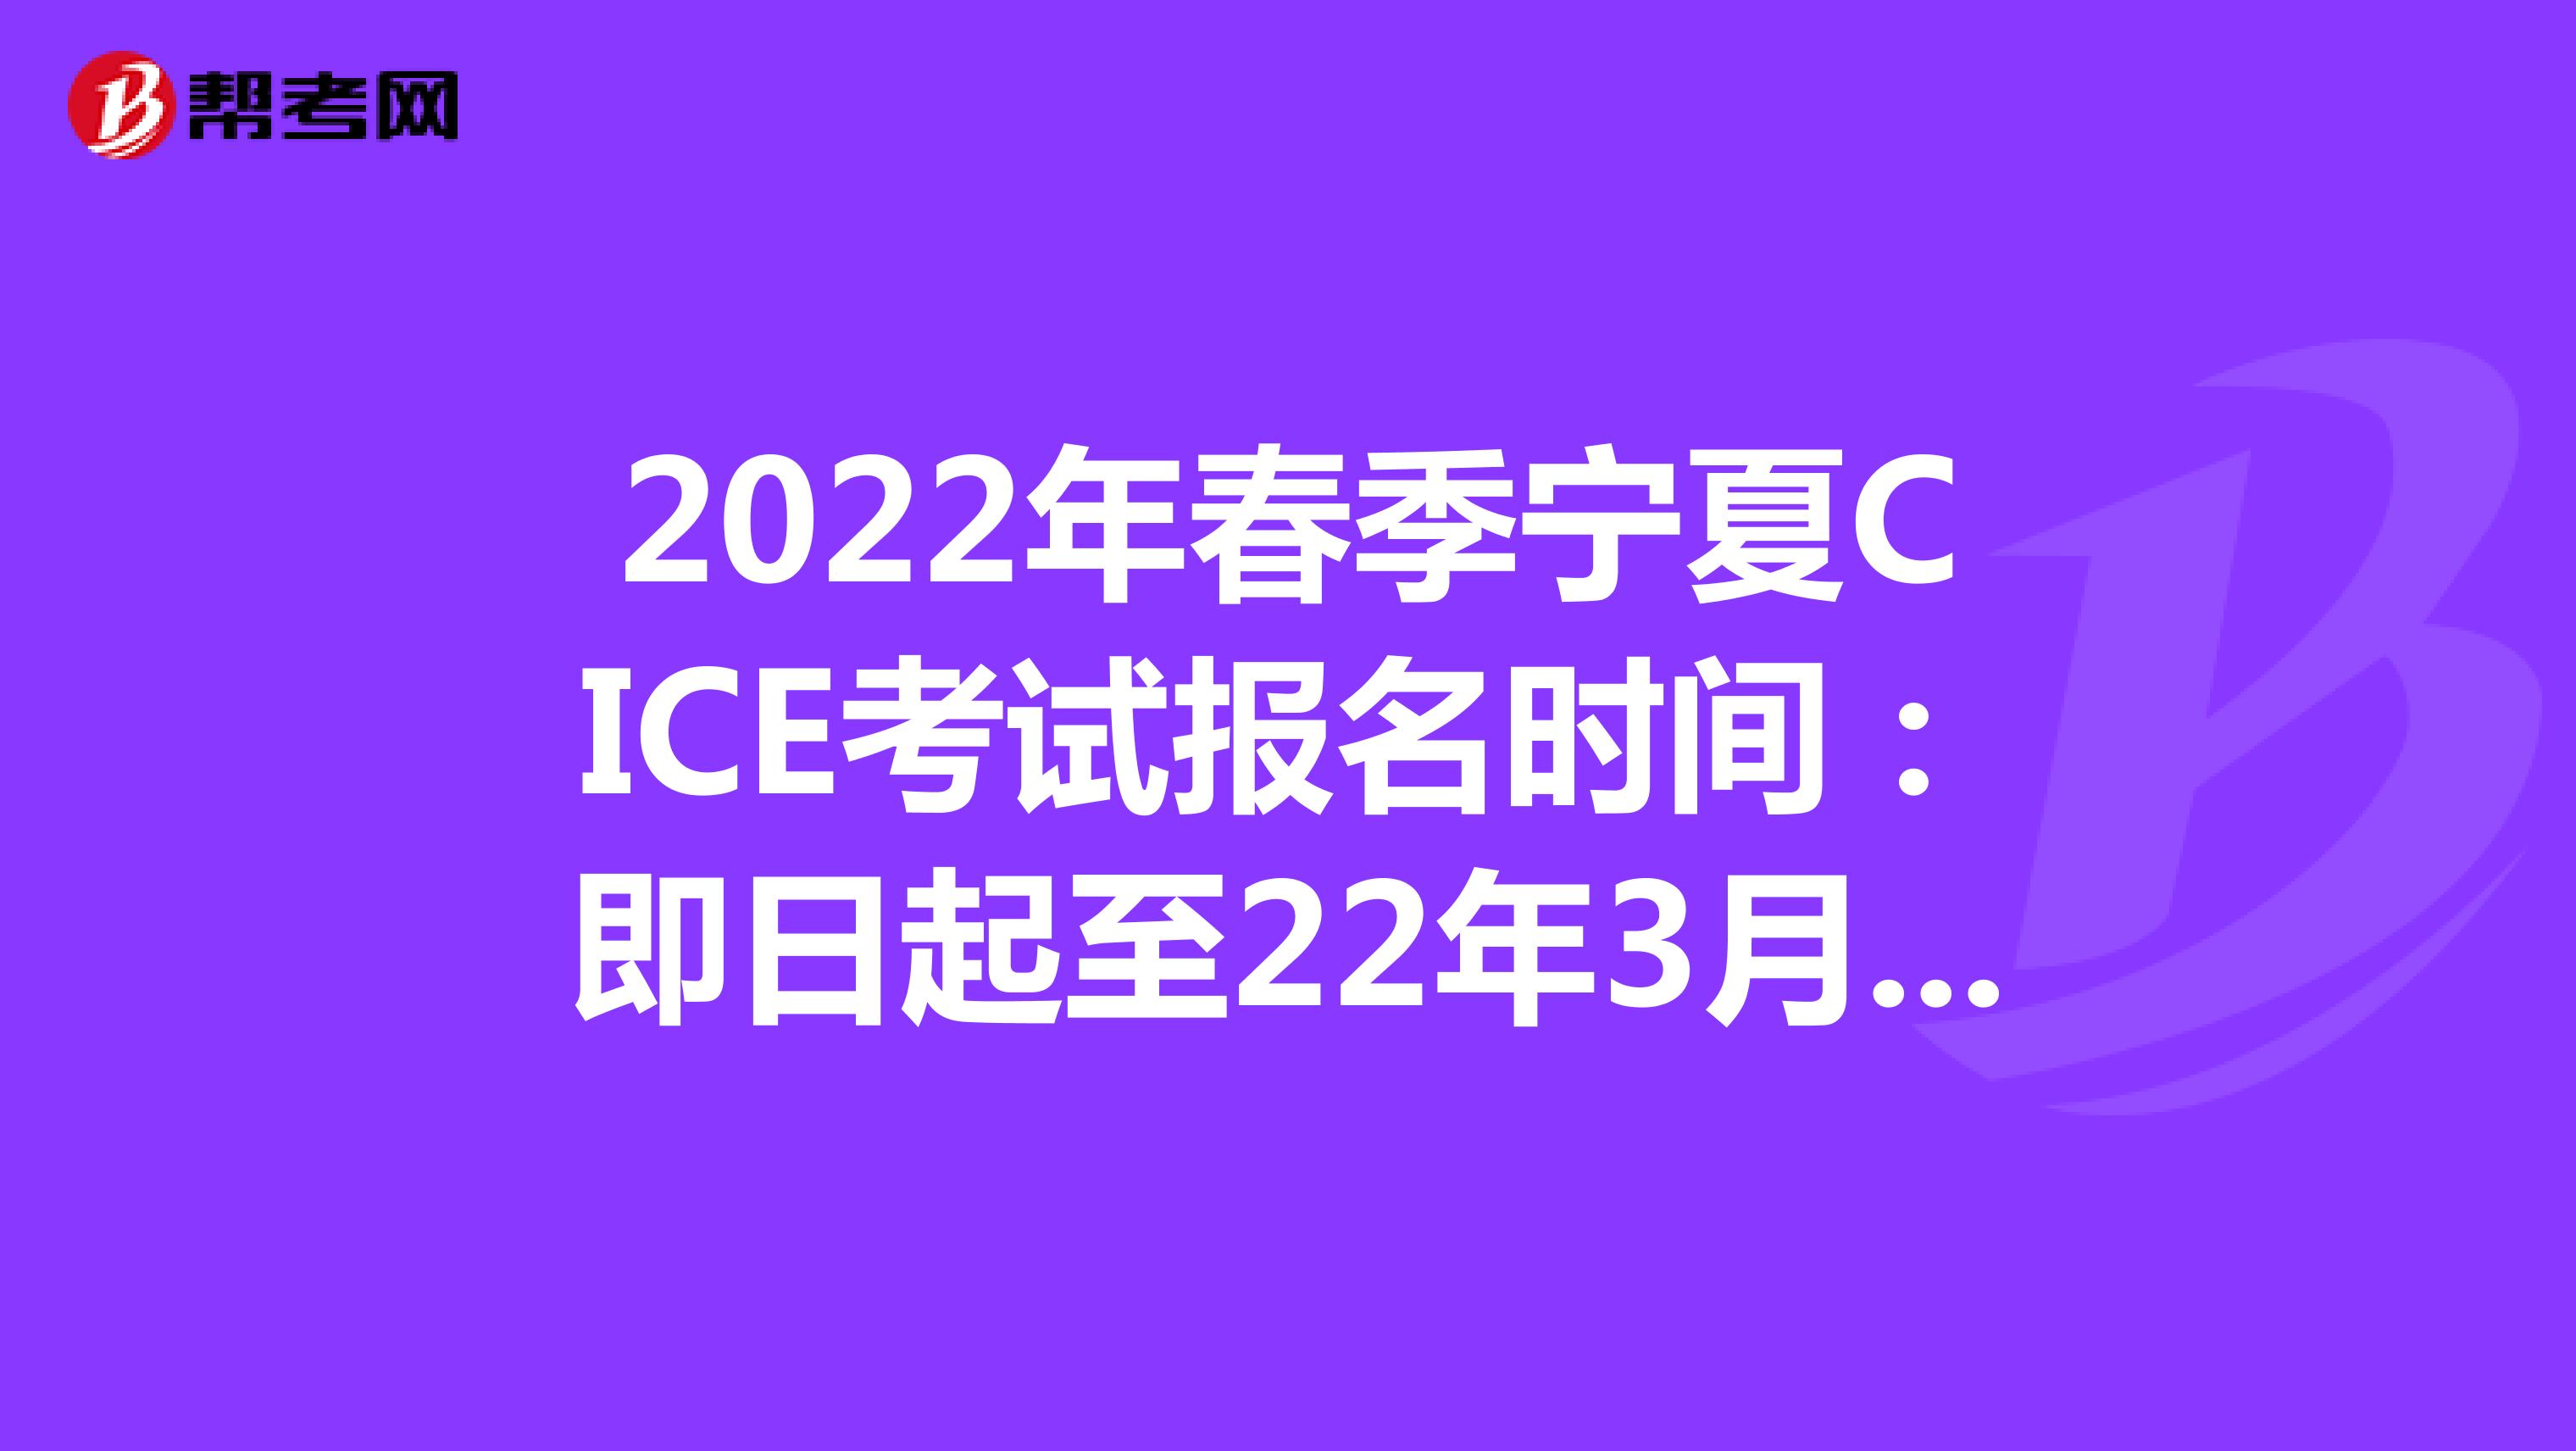 2022年春季宁夏CICE考试报名时间：即日起至22年3月31日